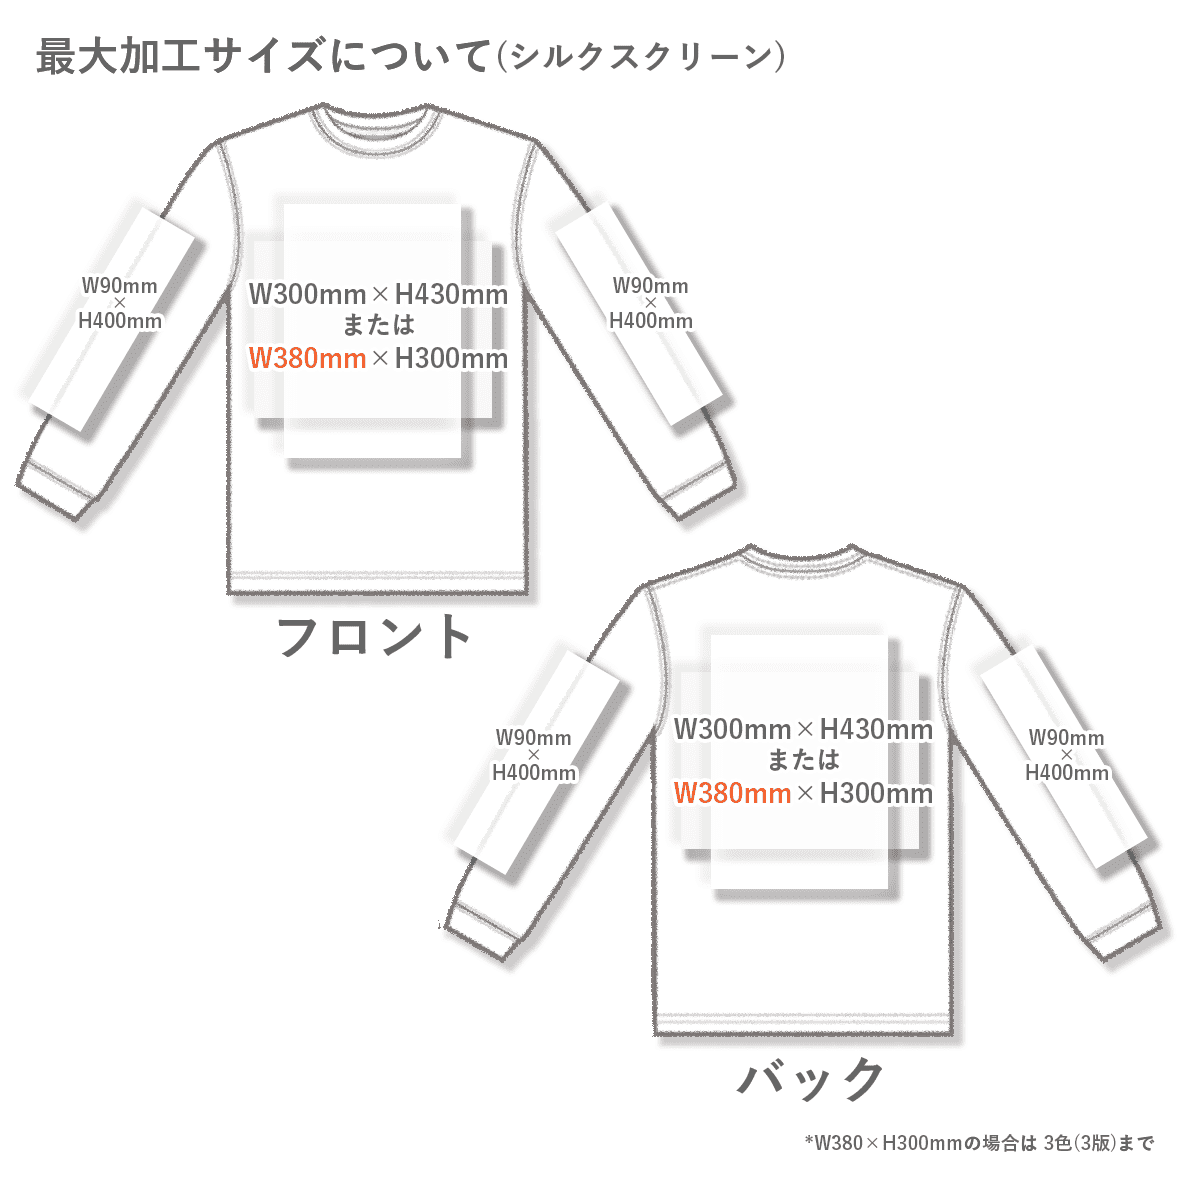 【在庫限りSALE】 Comfort Colors コンフォートカラーズ [国外カラー] 6.1 oz Garment-Dyed Long Sleeve T-Shirt (品番6014US)